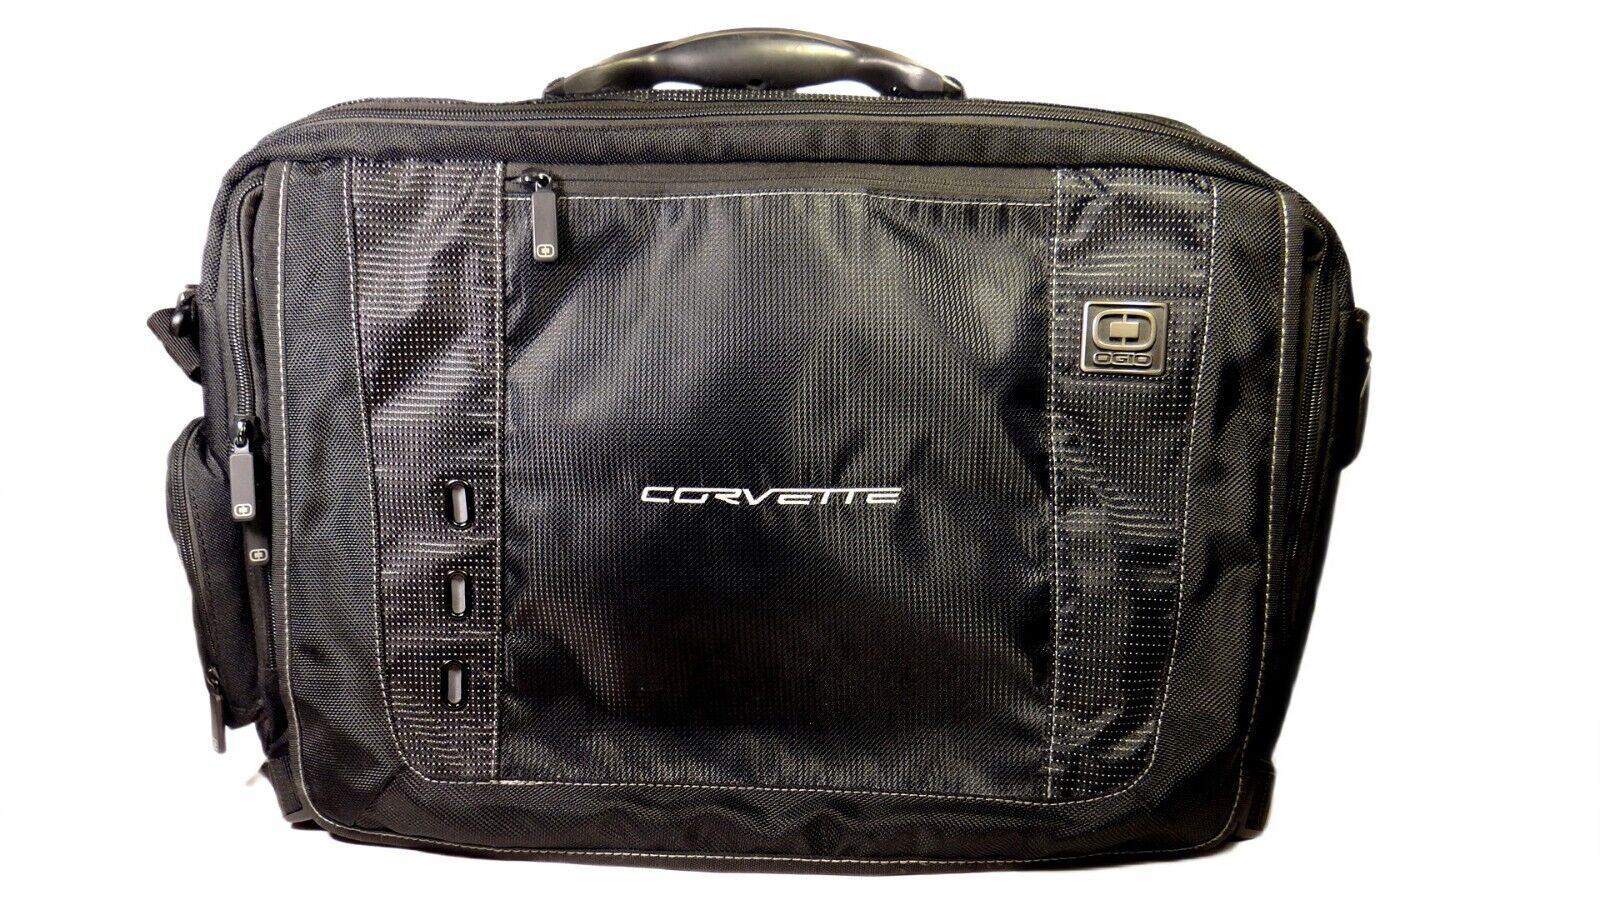 OGIO Explorer Messenger Laptop Computer Travel Bag Black Gray CORVETTE